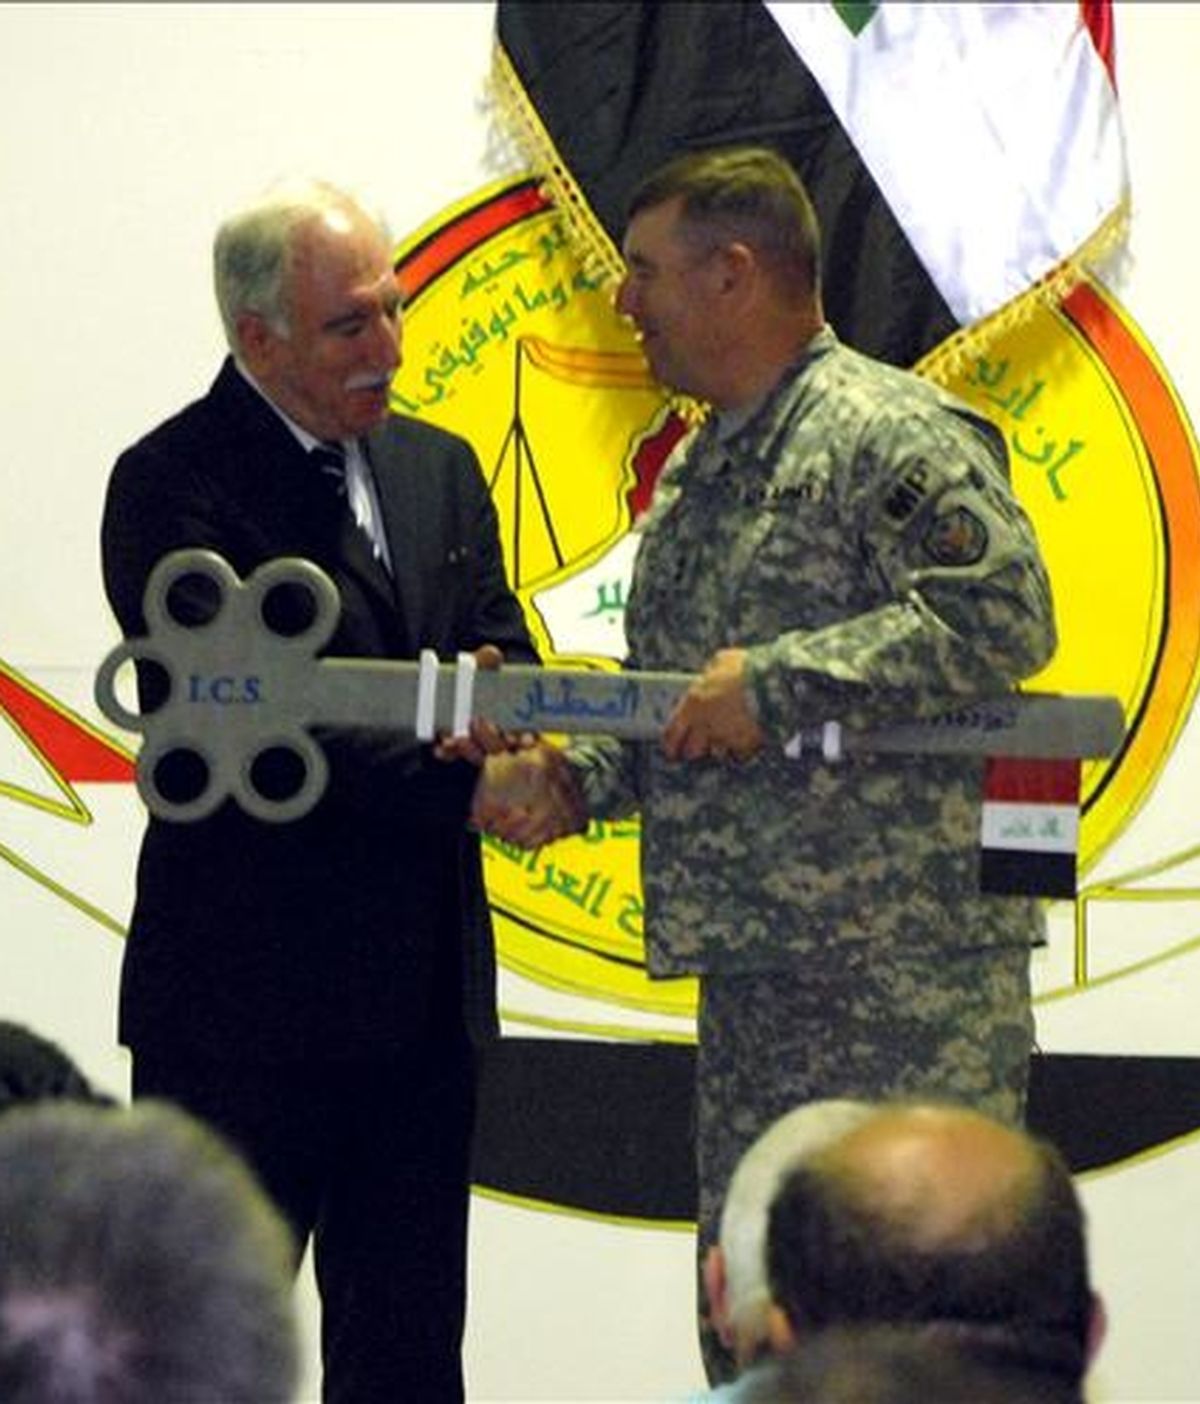 El general estadounidense Jerry Cannon (d) entregando una llave simbólica al ministro iraquí de Justicia, Dara Nur al Din, durante la ceremonia de transferencia del mando de la última prisión bajo el control estadounidense, este jueves en Bagdad. EFE